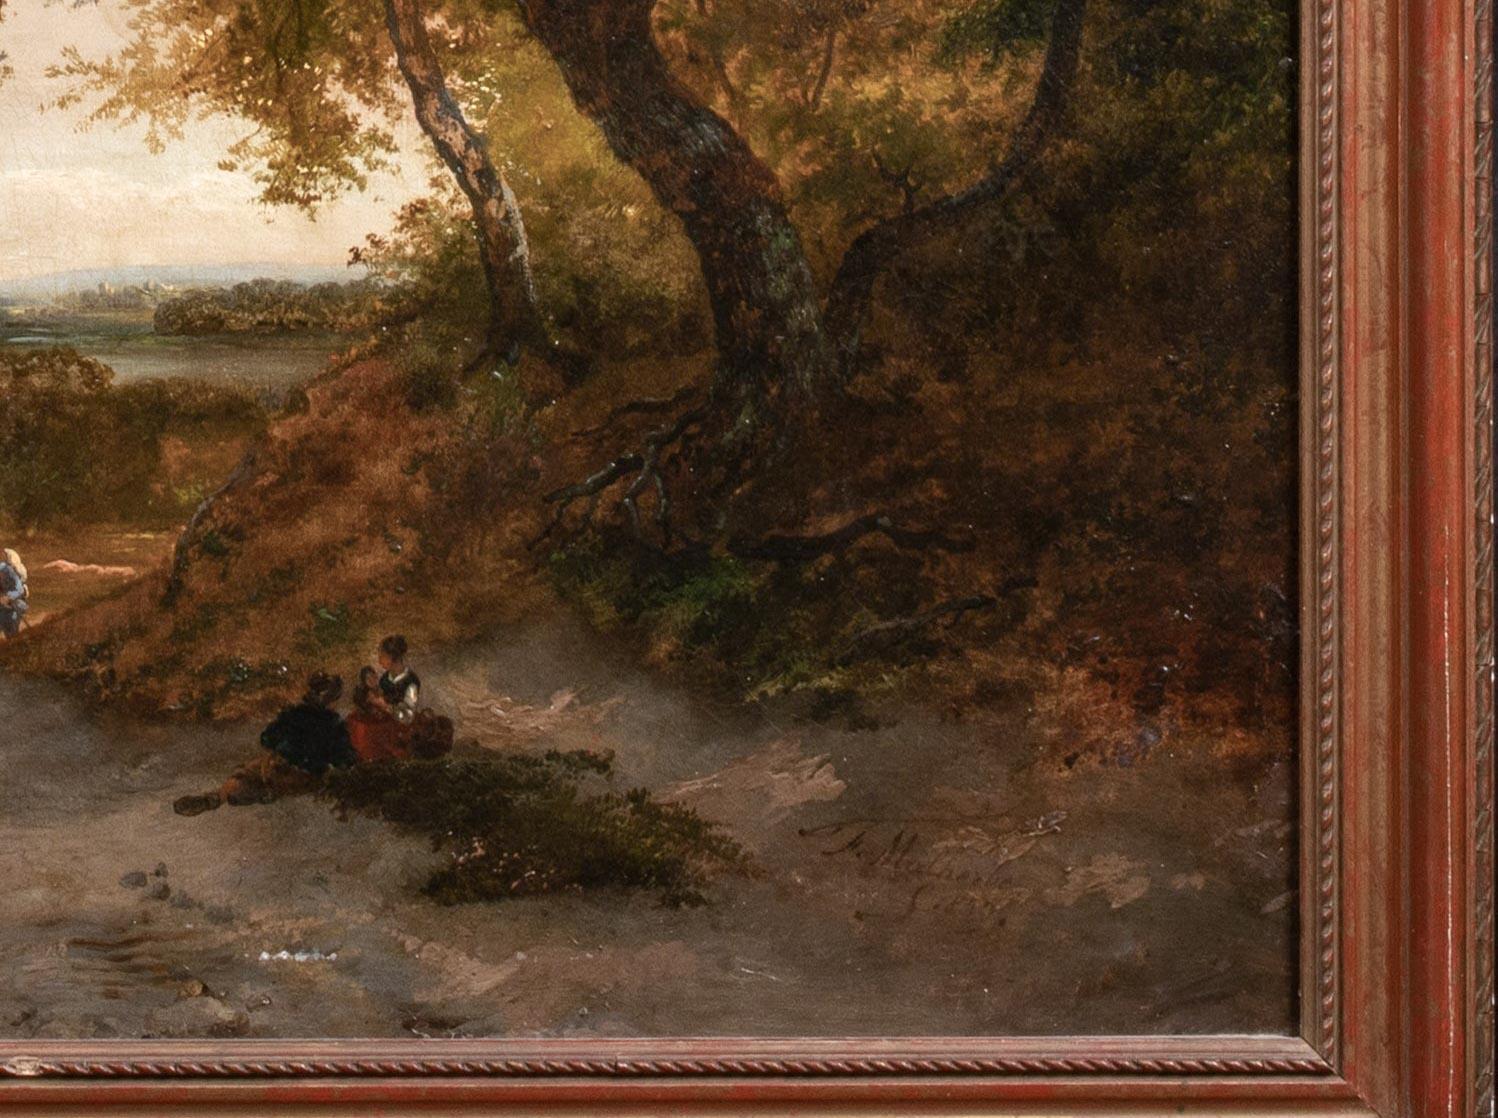 Figuren in einer Landschaft, in der Ferne der Rhein, datiert 1869

von Adolphe Malherbe

Riesige deutsche Rheinlandschaft des 19. Jahrhunderts mit Figuren, die im Vordergrund arbeiten, Öl auf Leinwand. Ausgezeichnete Qualität und detailreiche